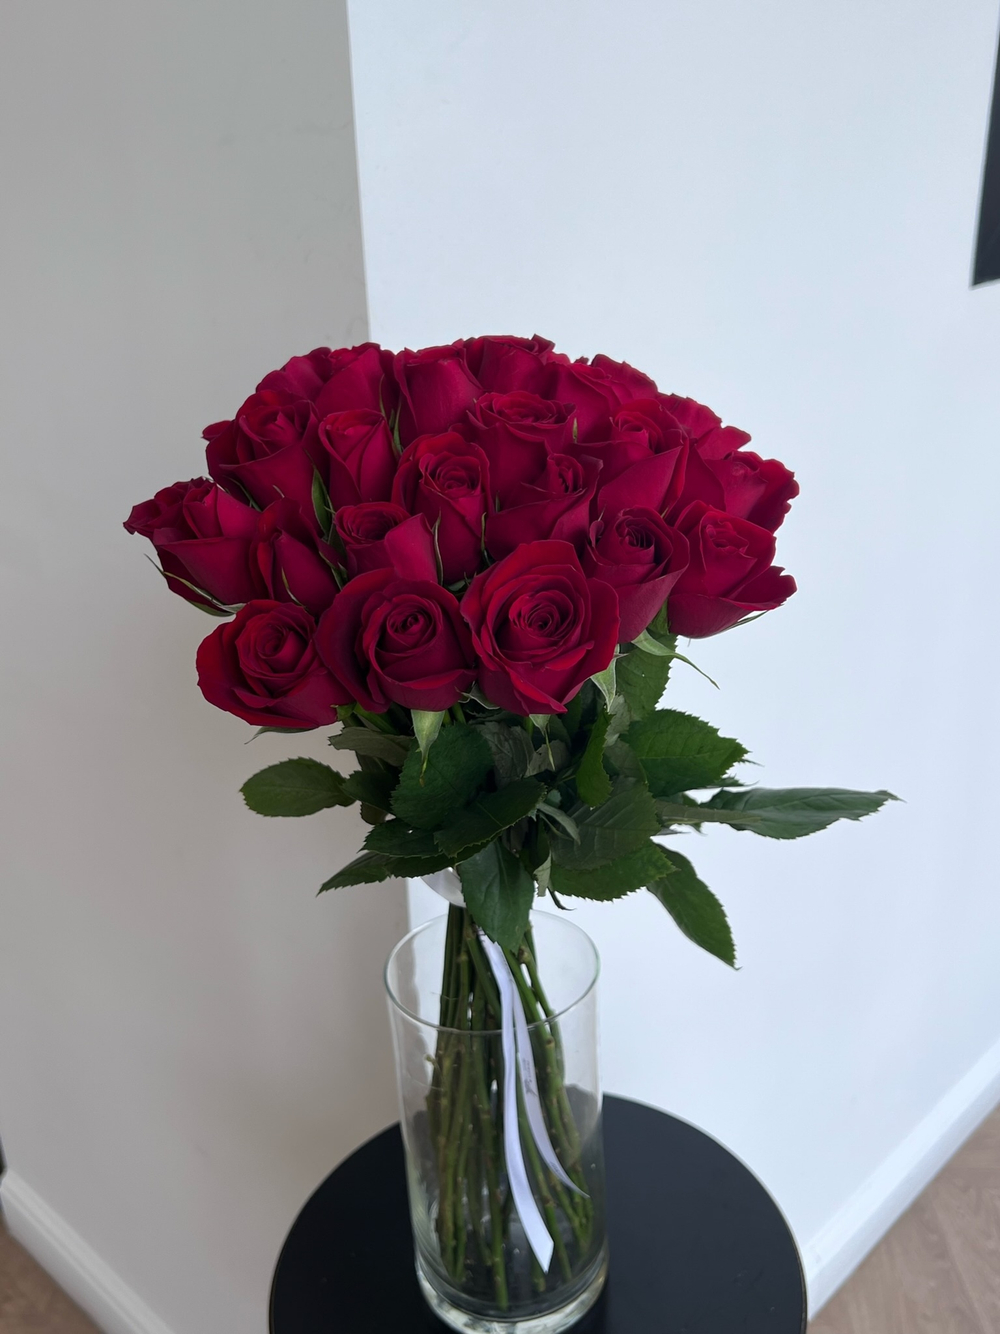 Букет из красной розы (50см) 25 шт под ленту